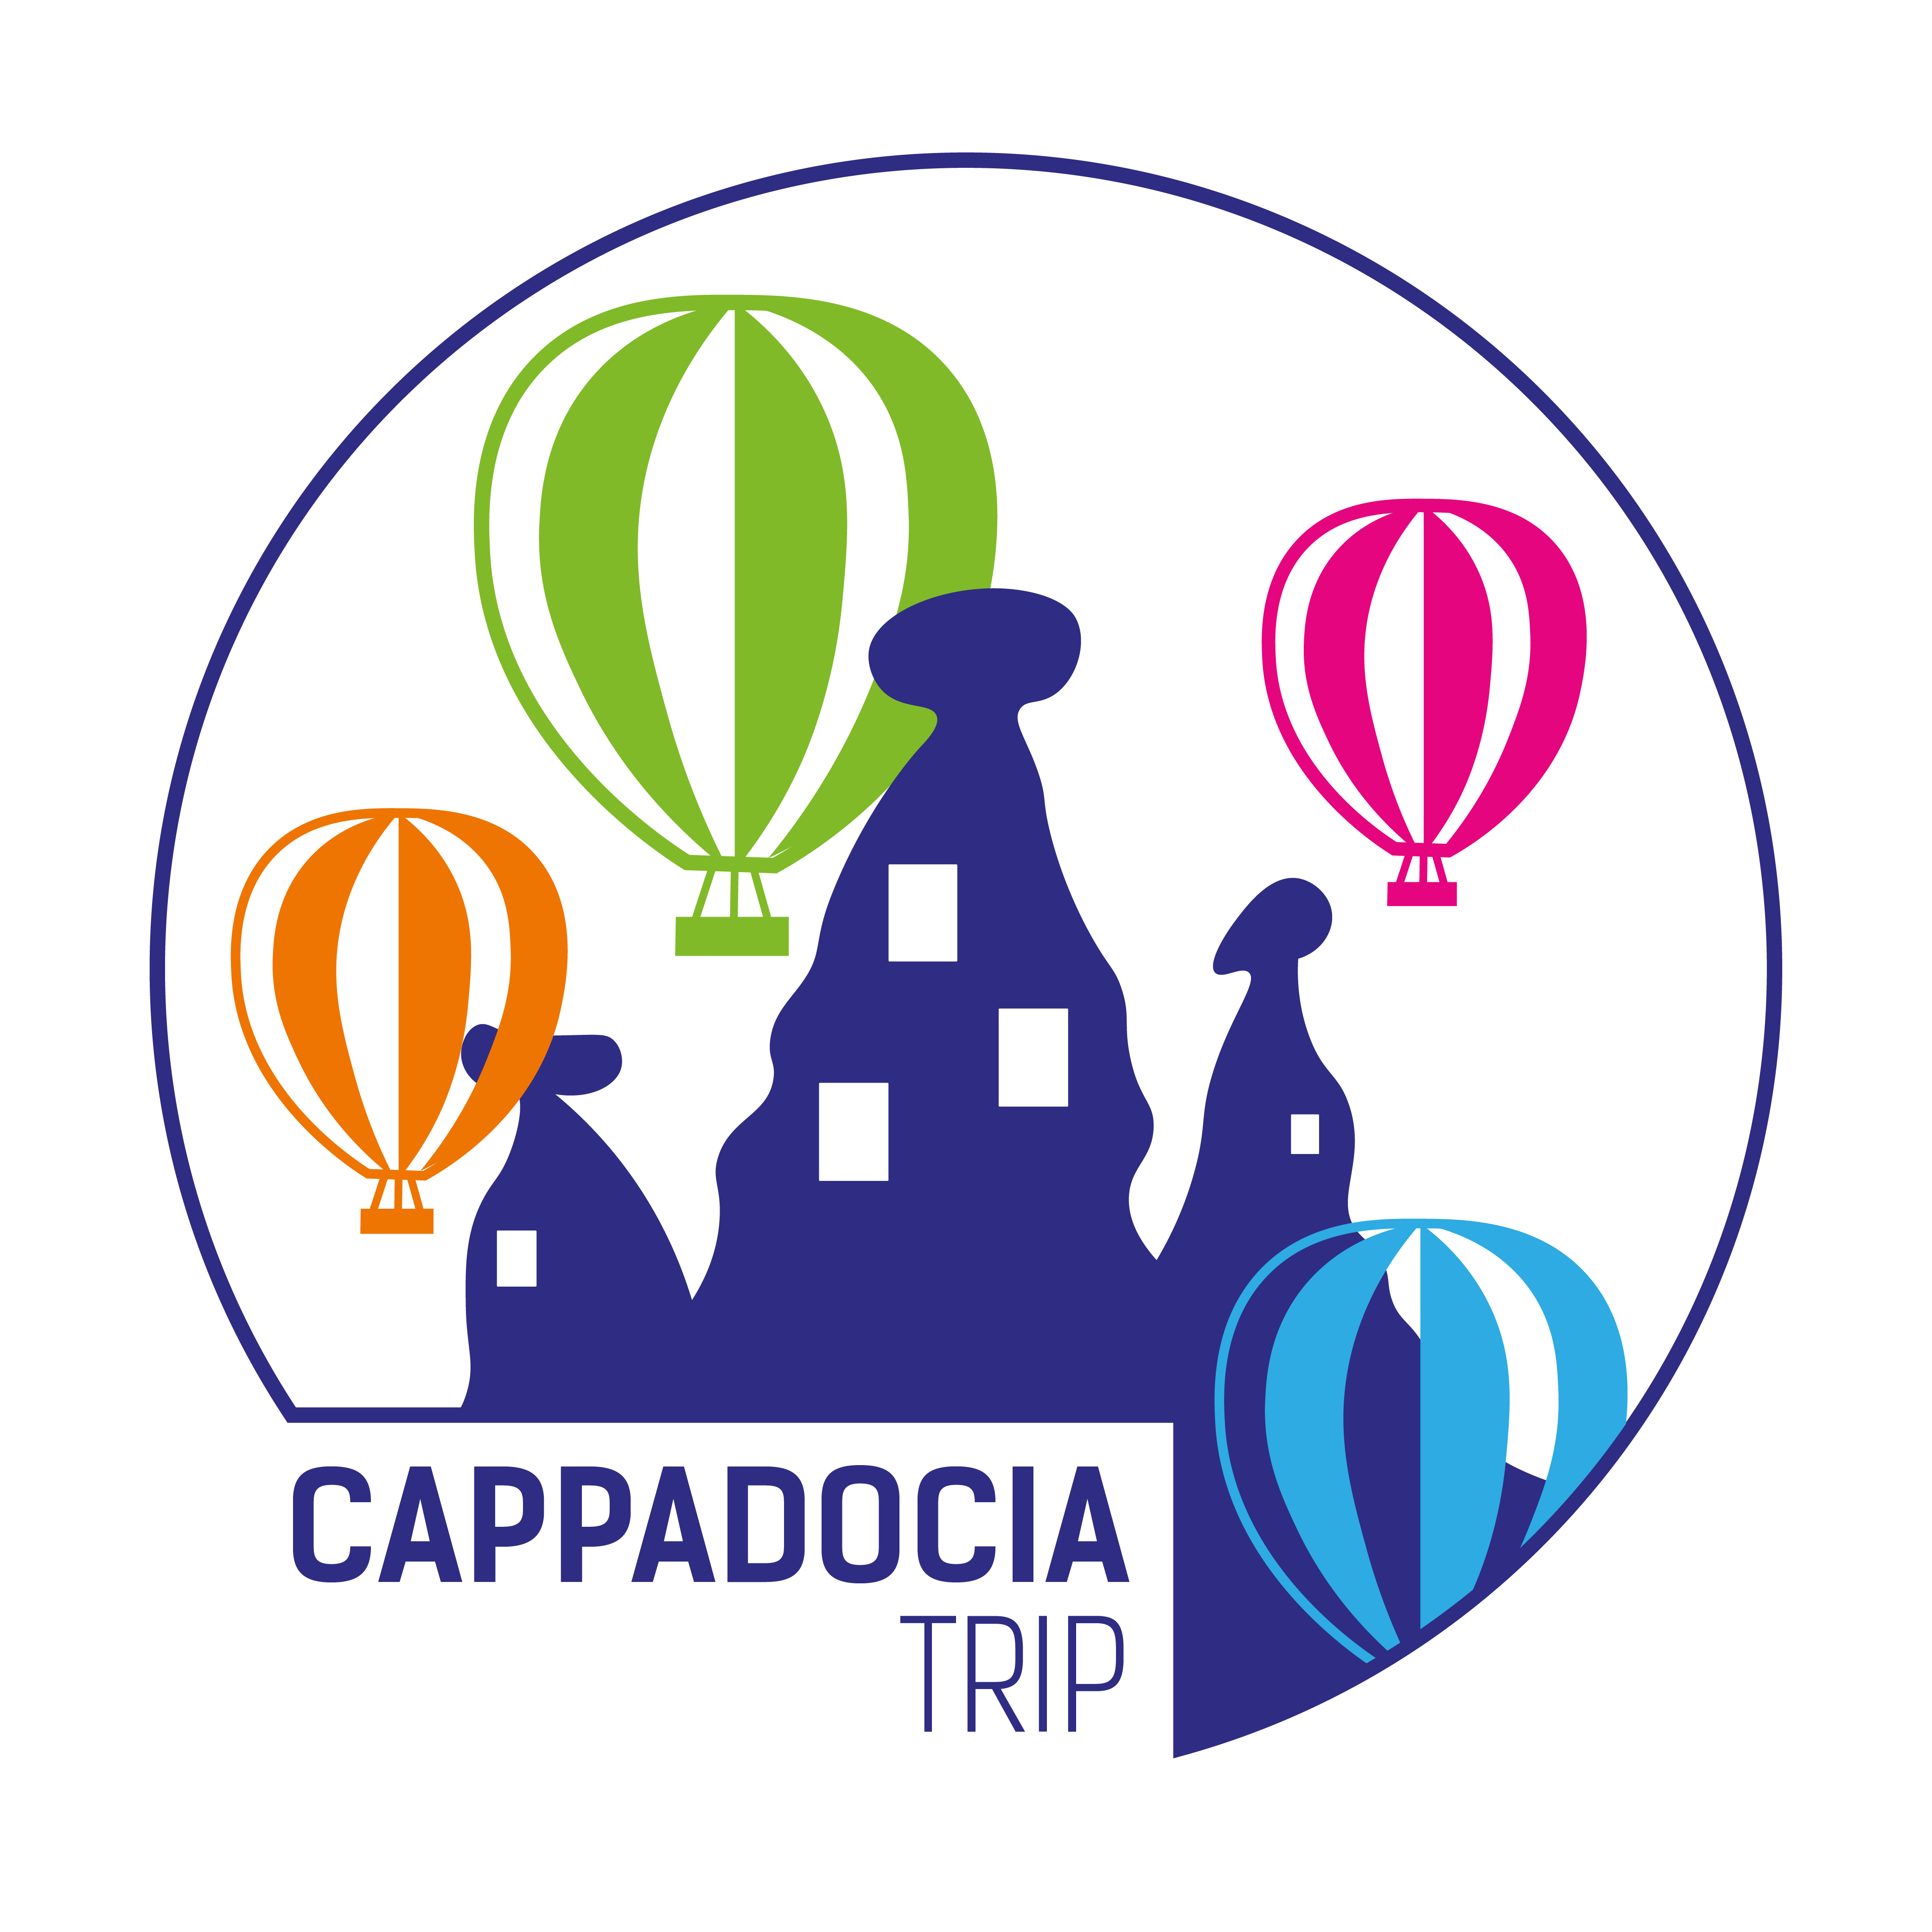 Grand Cappadocia